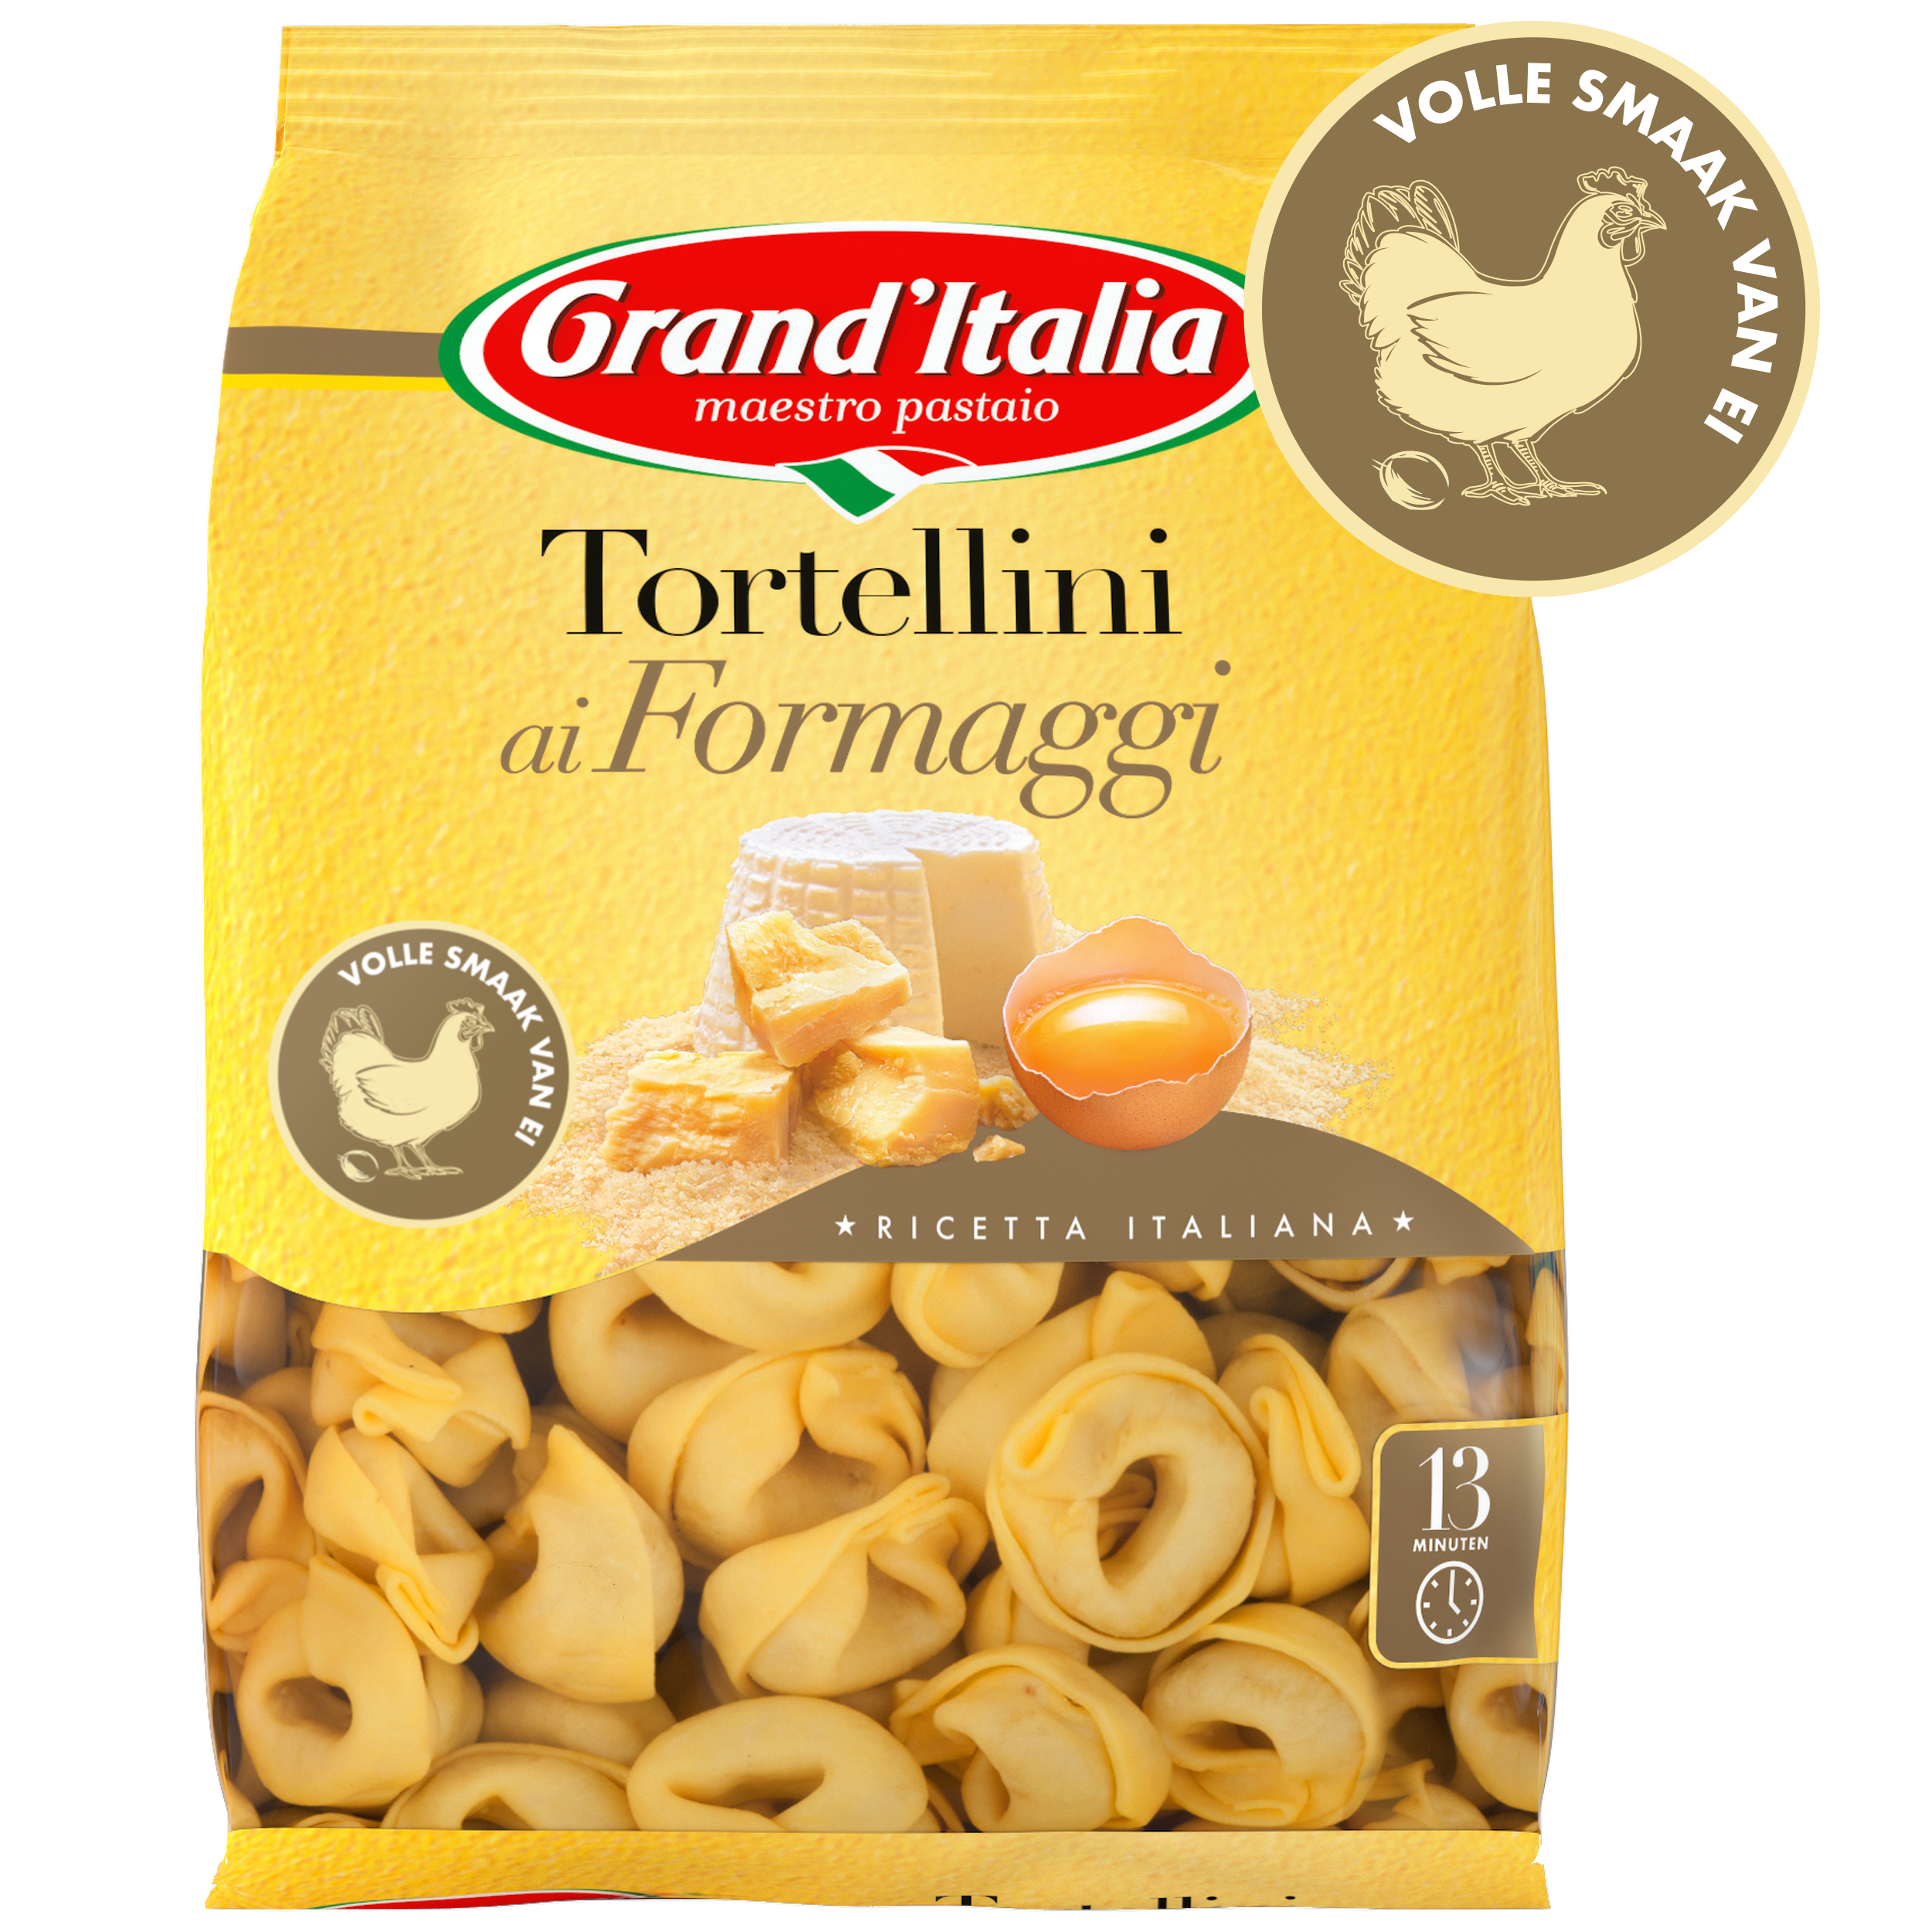 Pasta Tortellini ai Formaggi 220g claim Grand'Italia